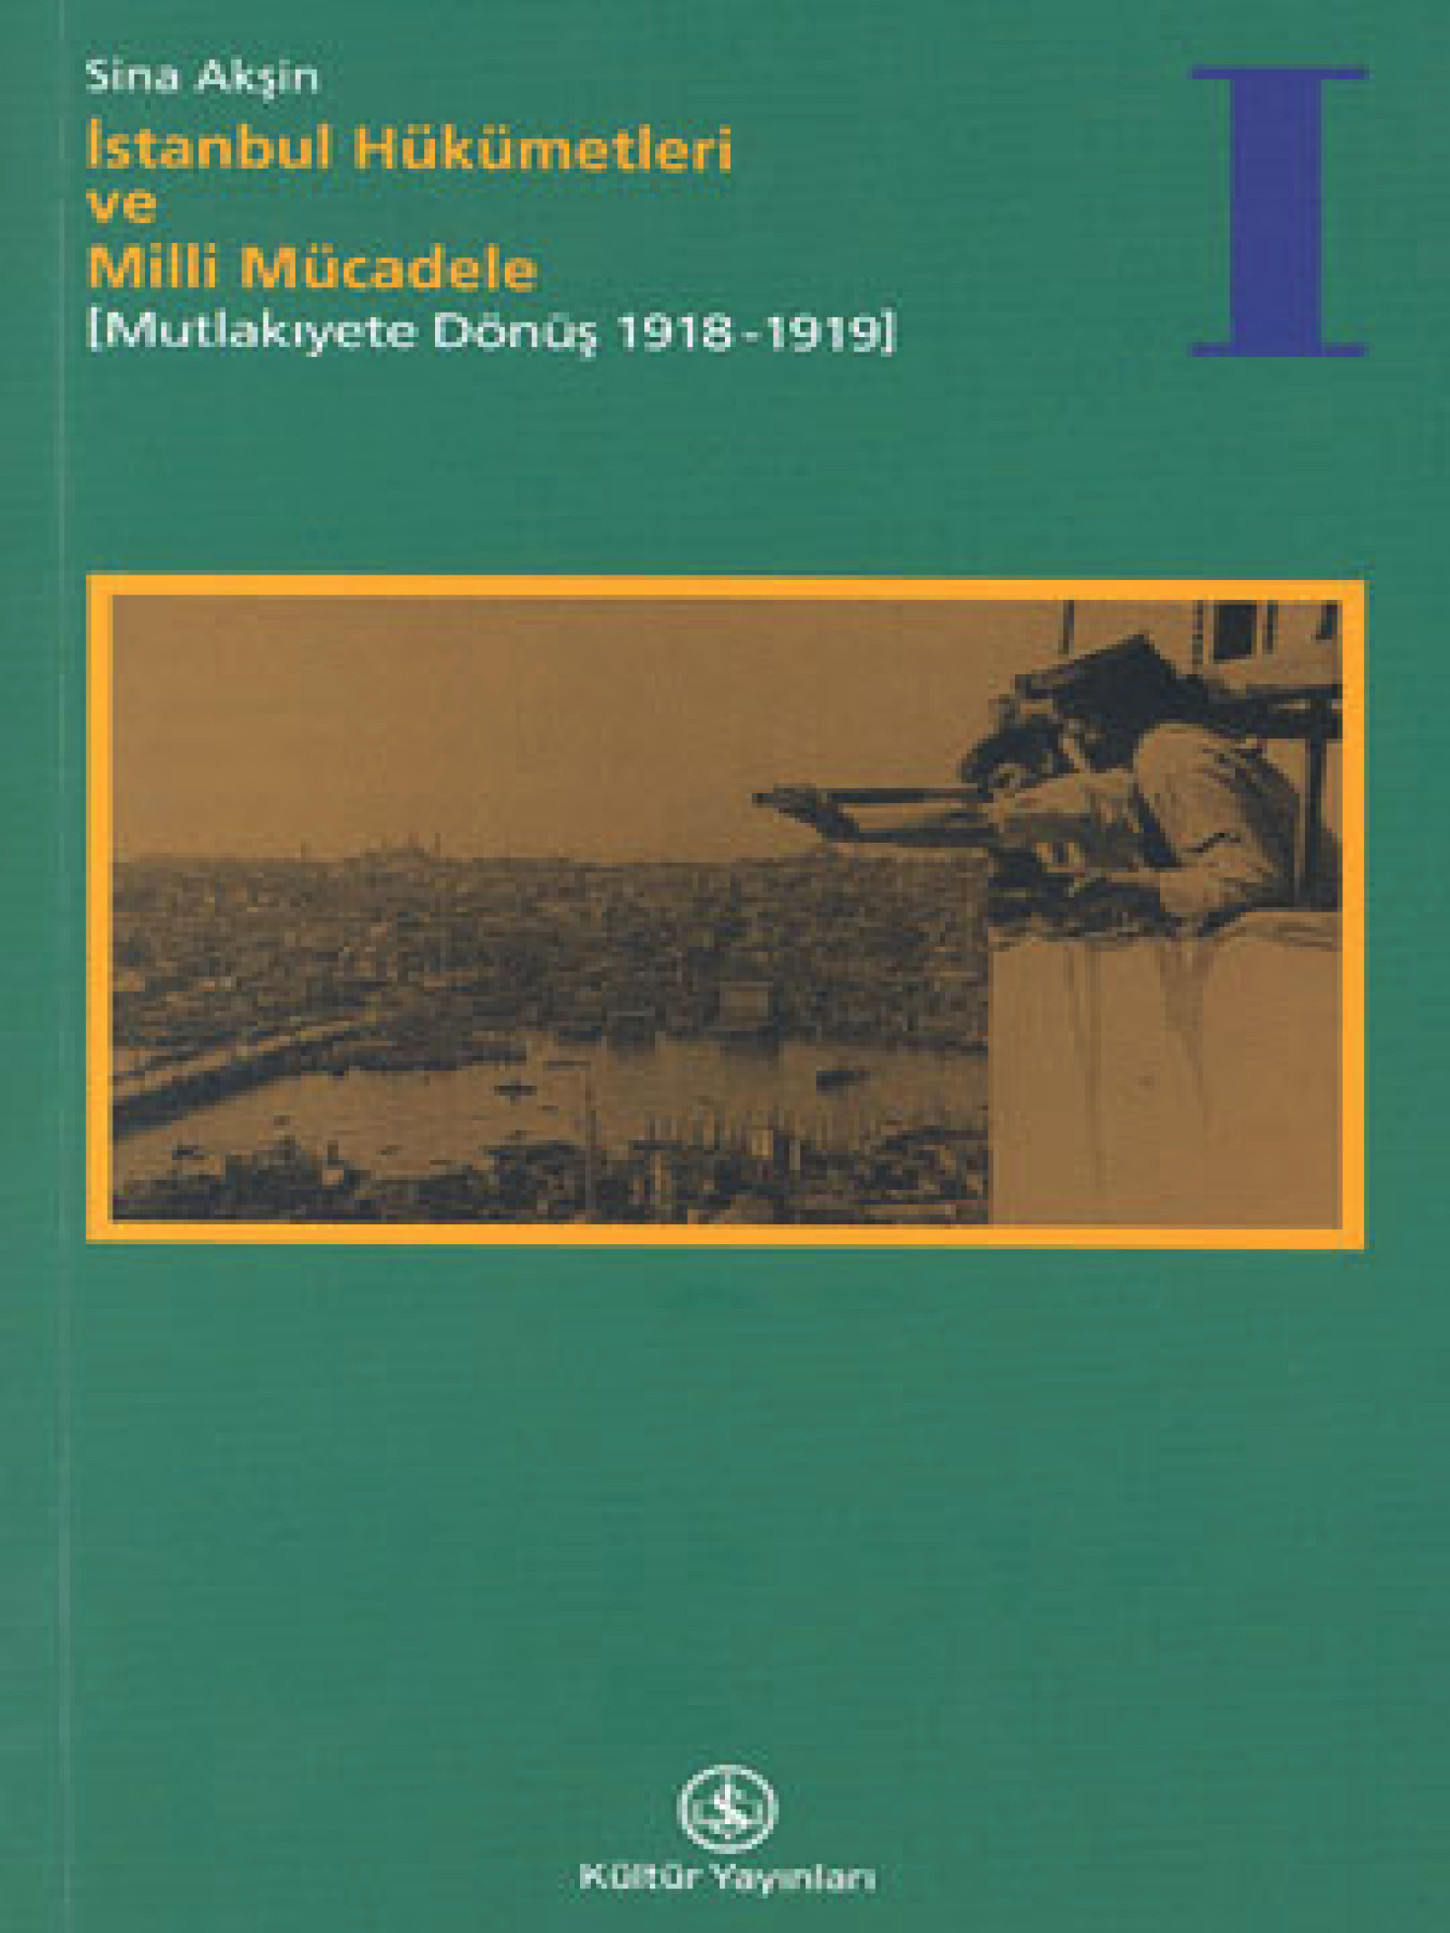 İstanbul Hükumetleri ve Milli Mücadele 1: Mutlakıyete Dönüş 1918-1919 Kitap Kapağı